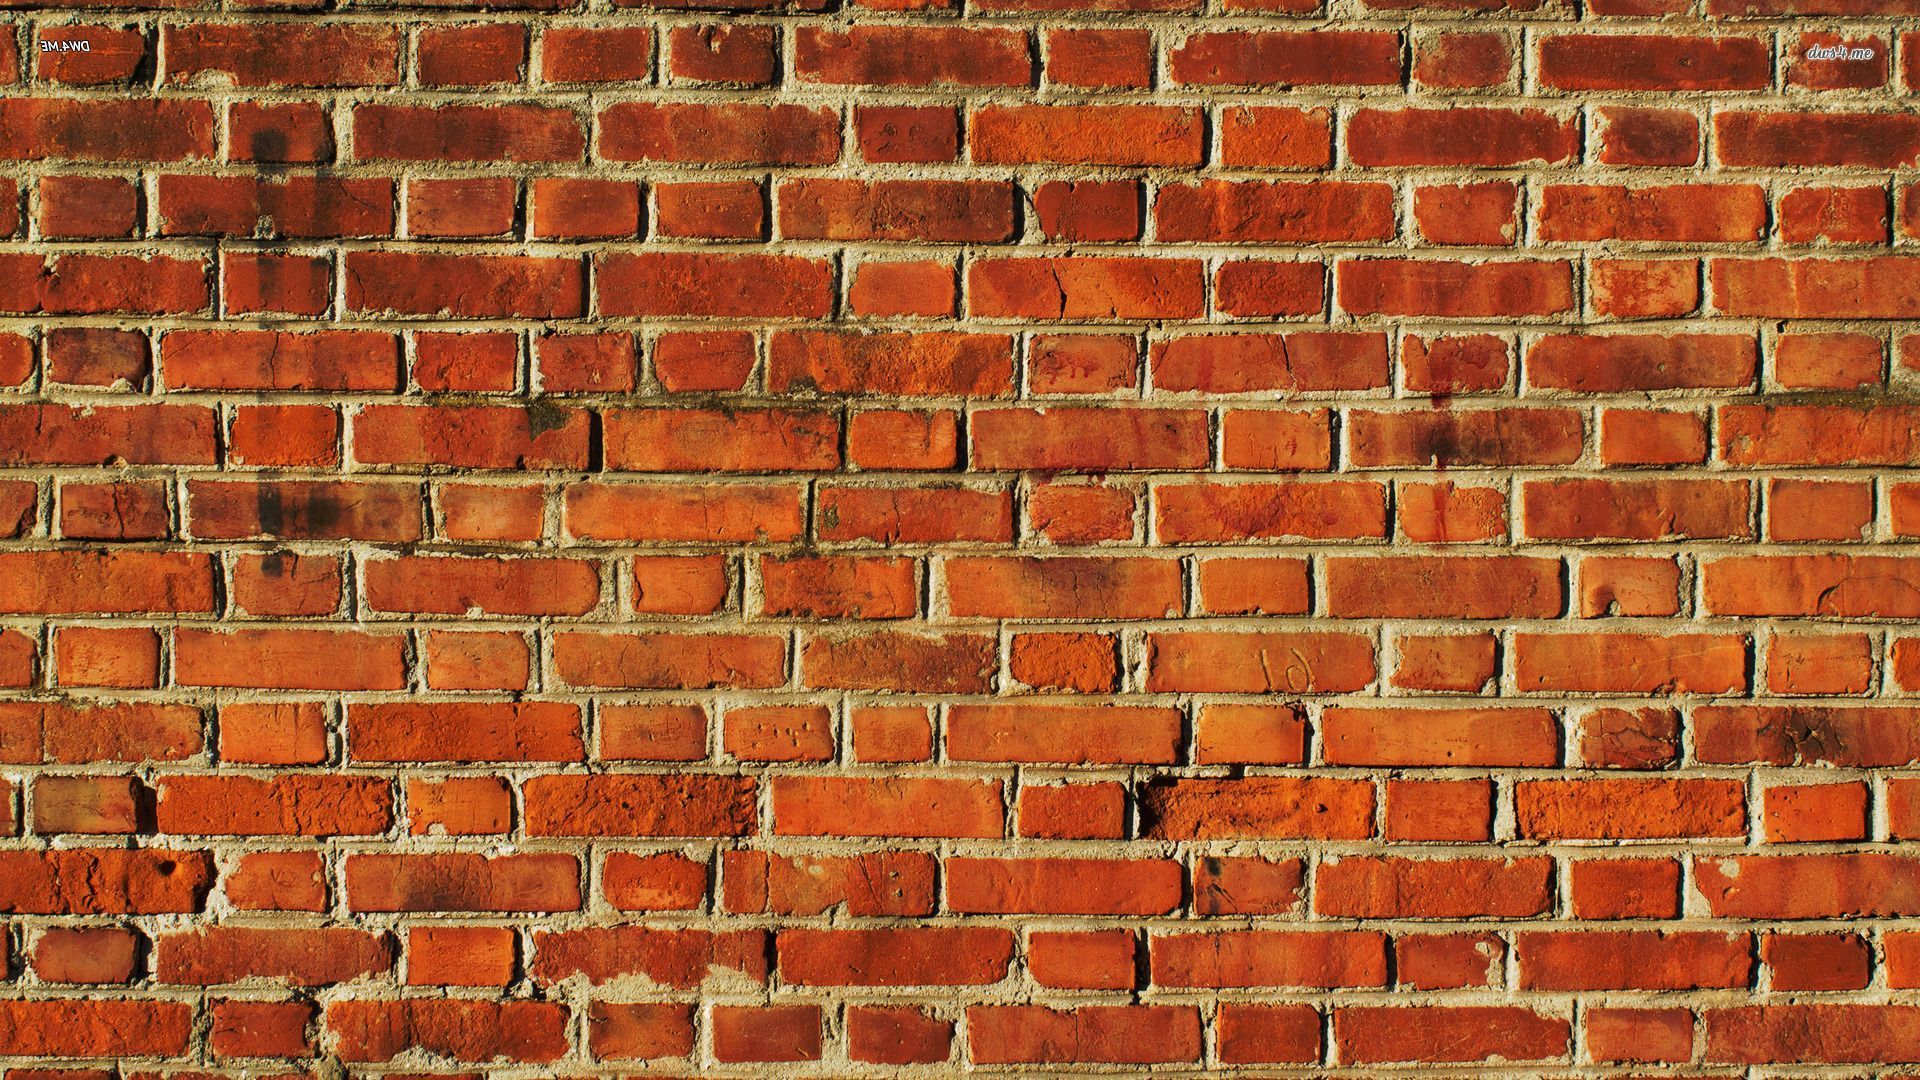 ... Brick wall wallpaper 1920x1080 ...